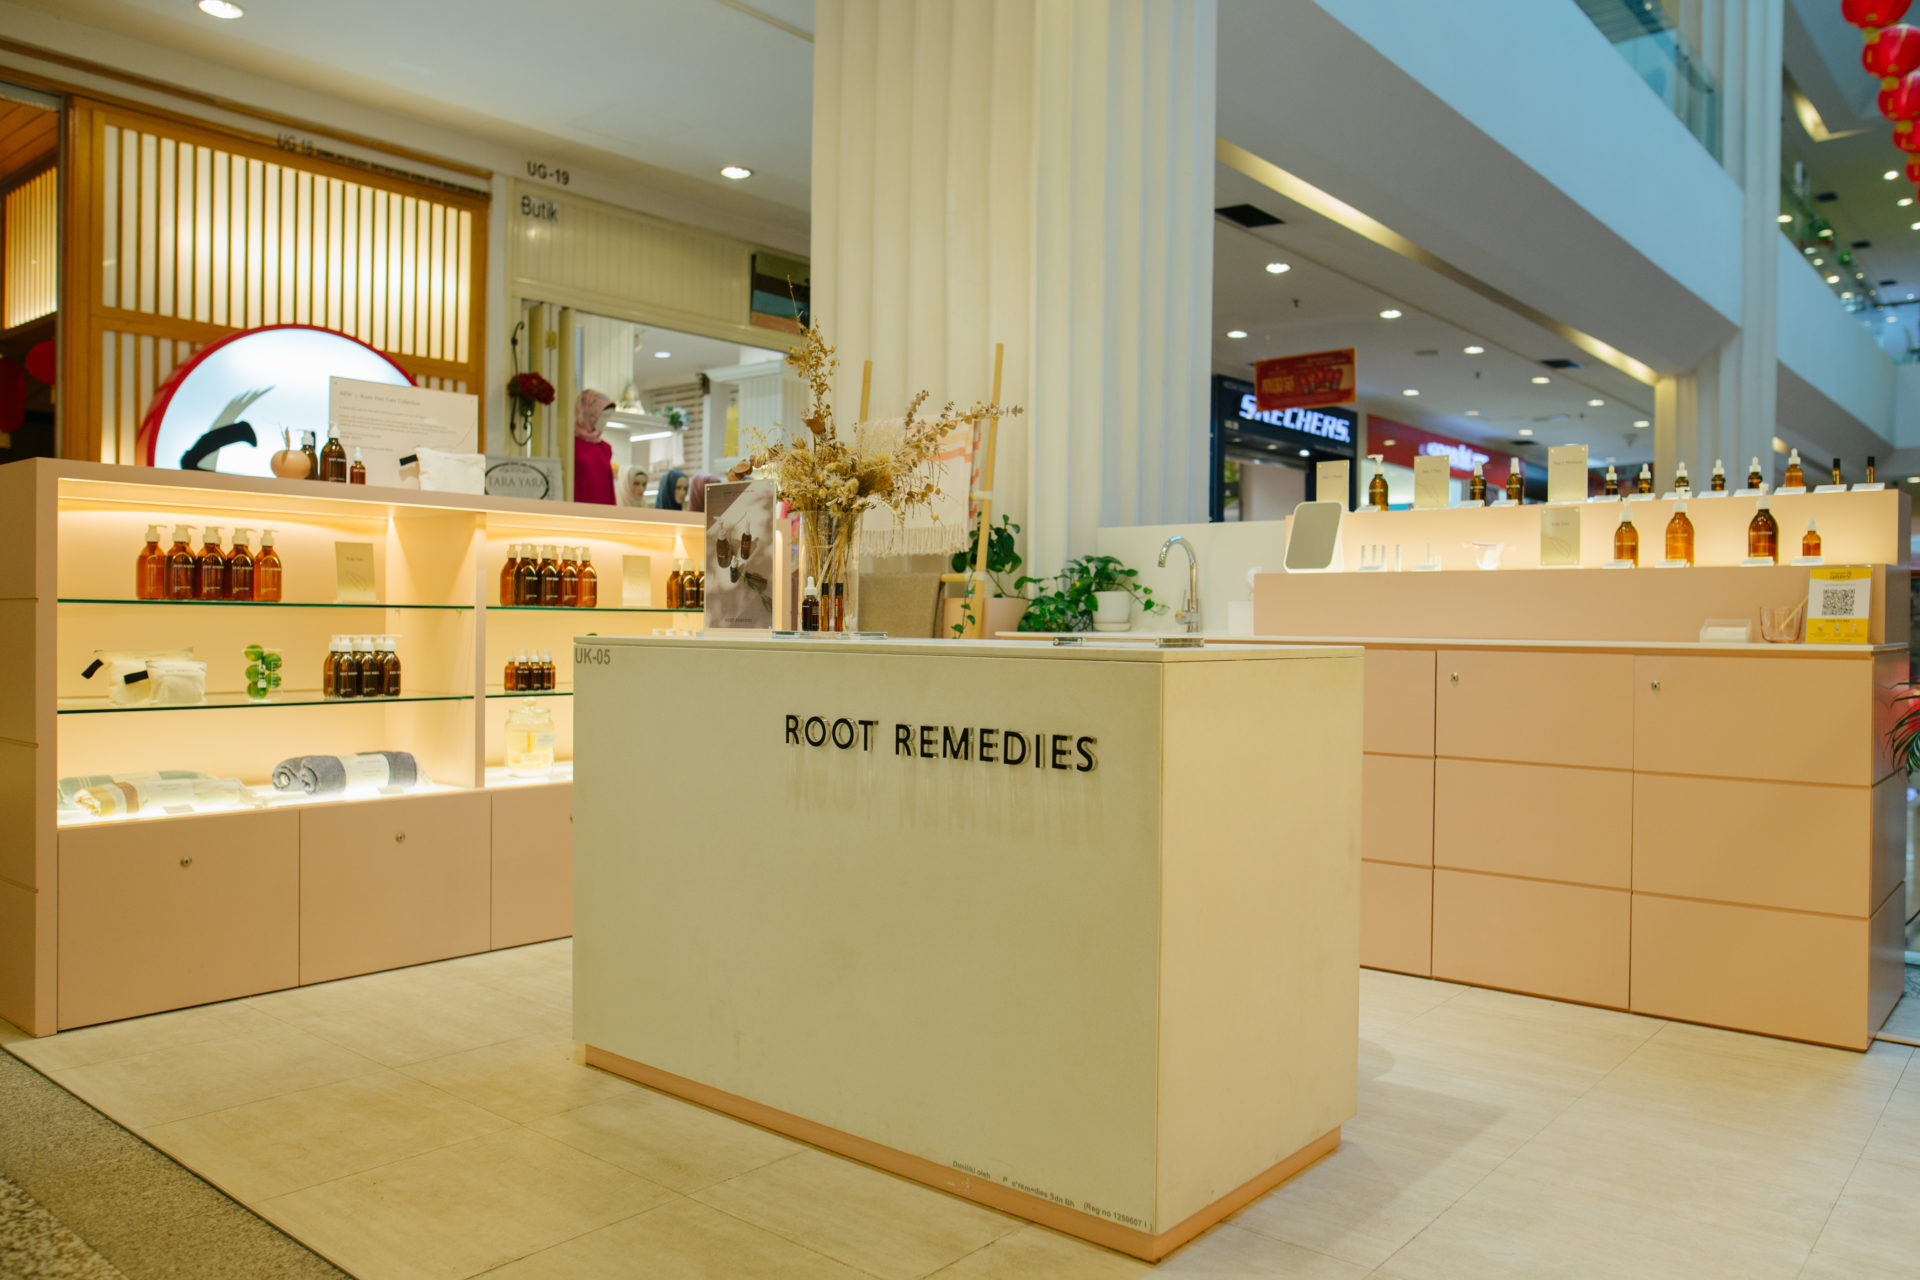 Root Remedies' brick and mortar store in Empire Shopping Gallery, Subang Jaya